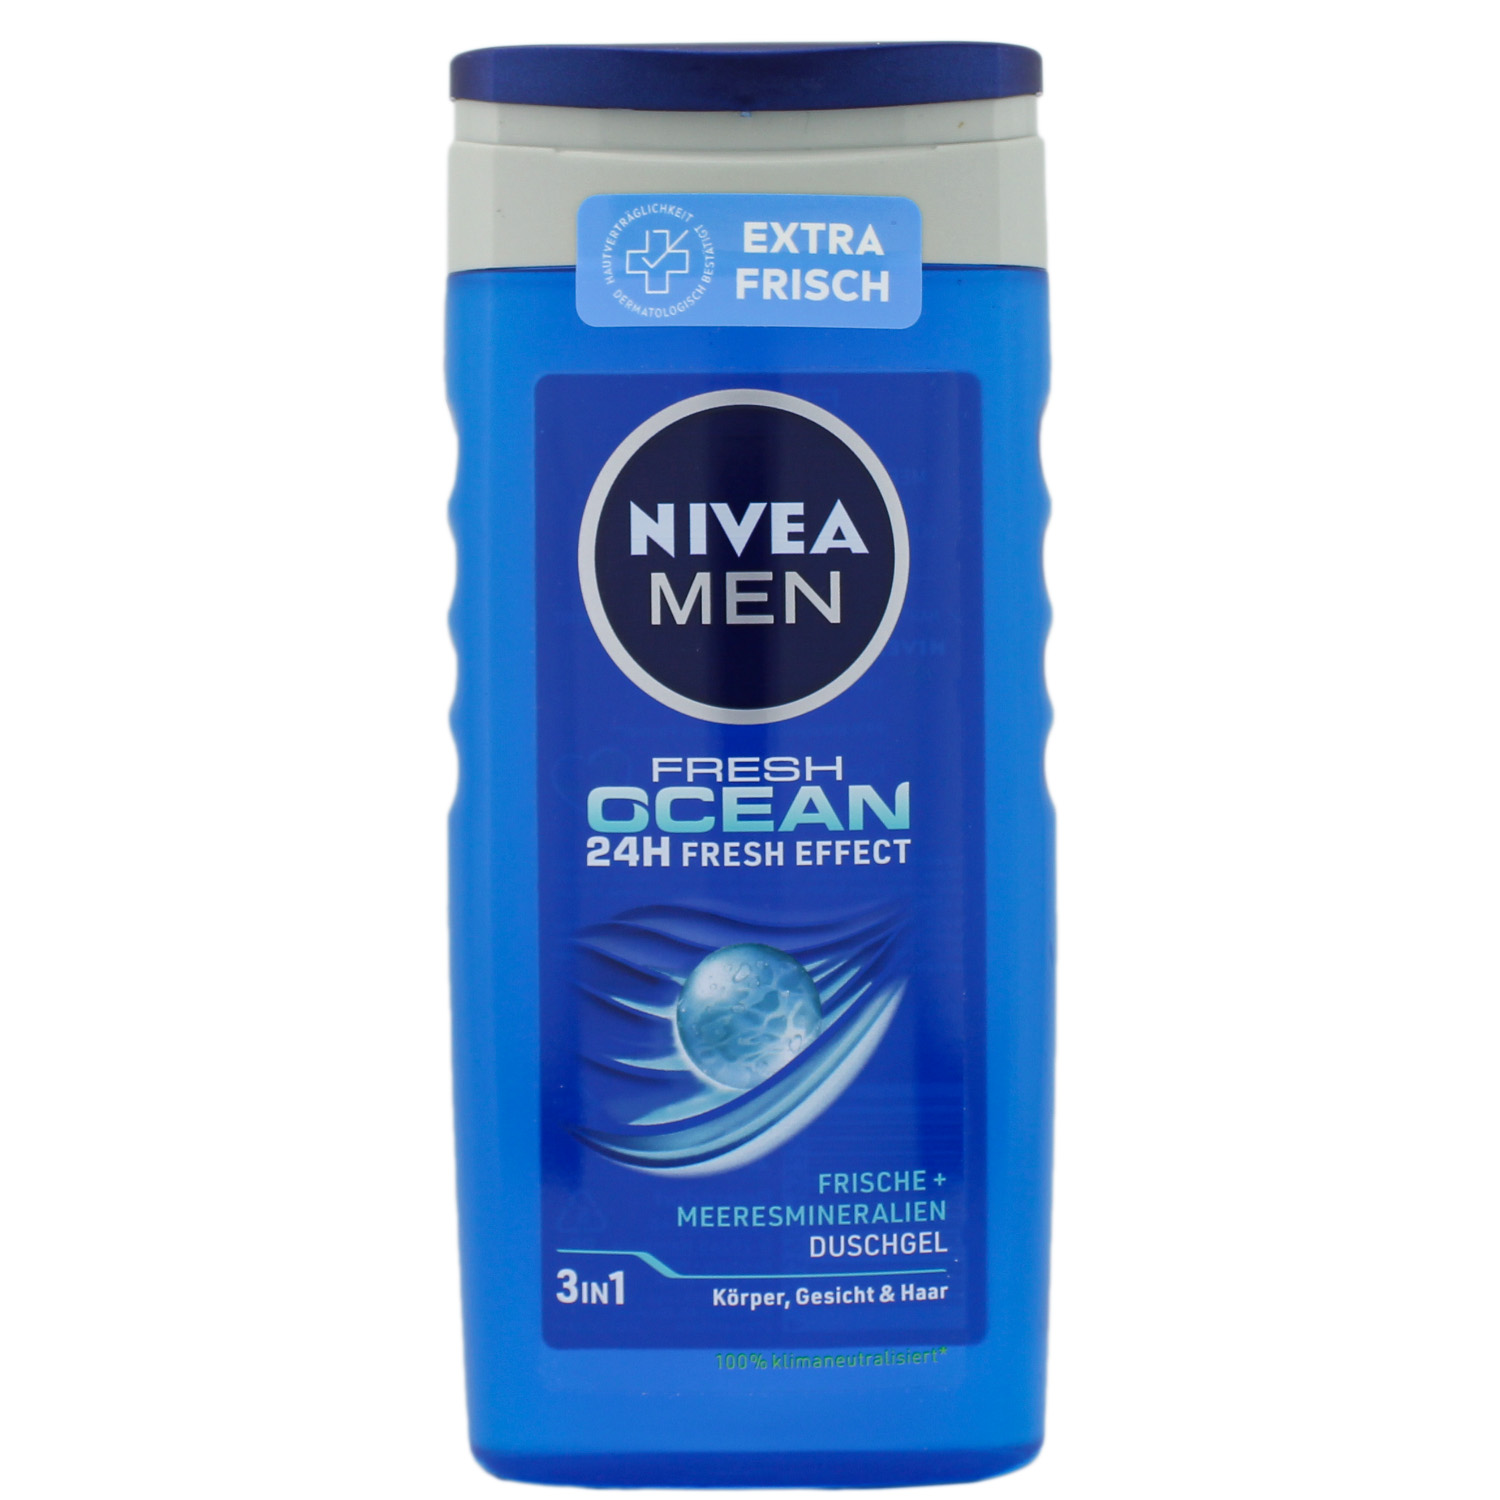 Nivea Men Fresh Ocean Pflegedusche 250ml